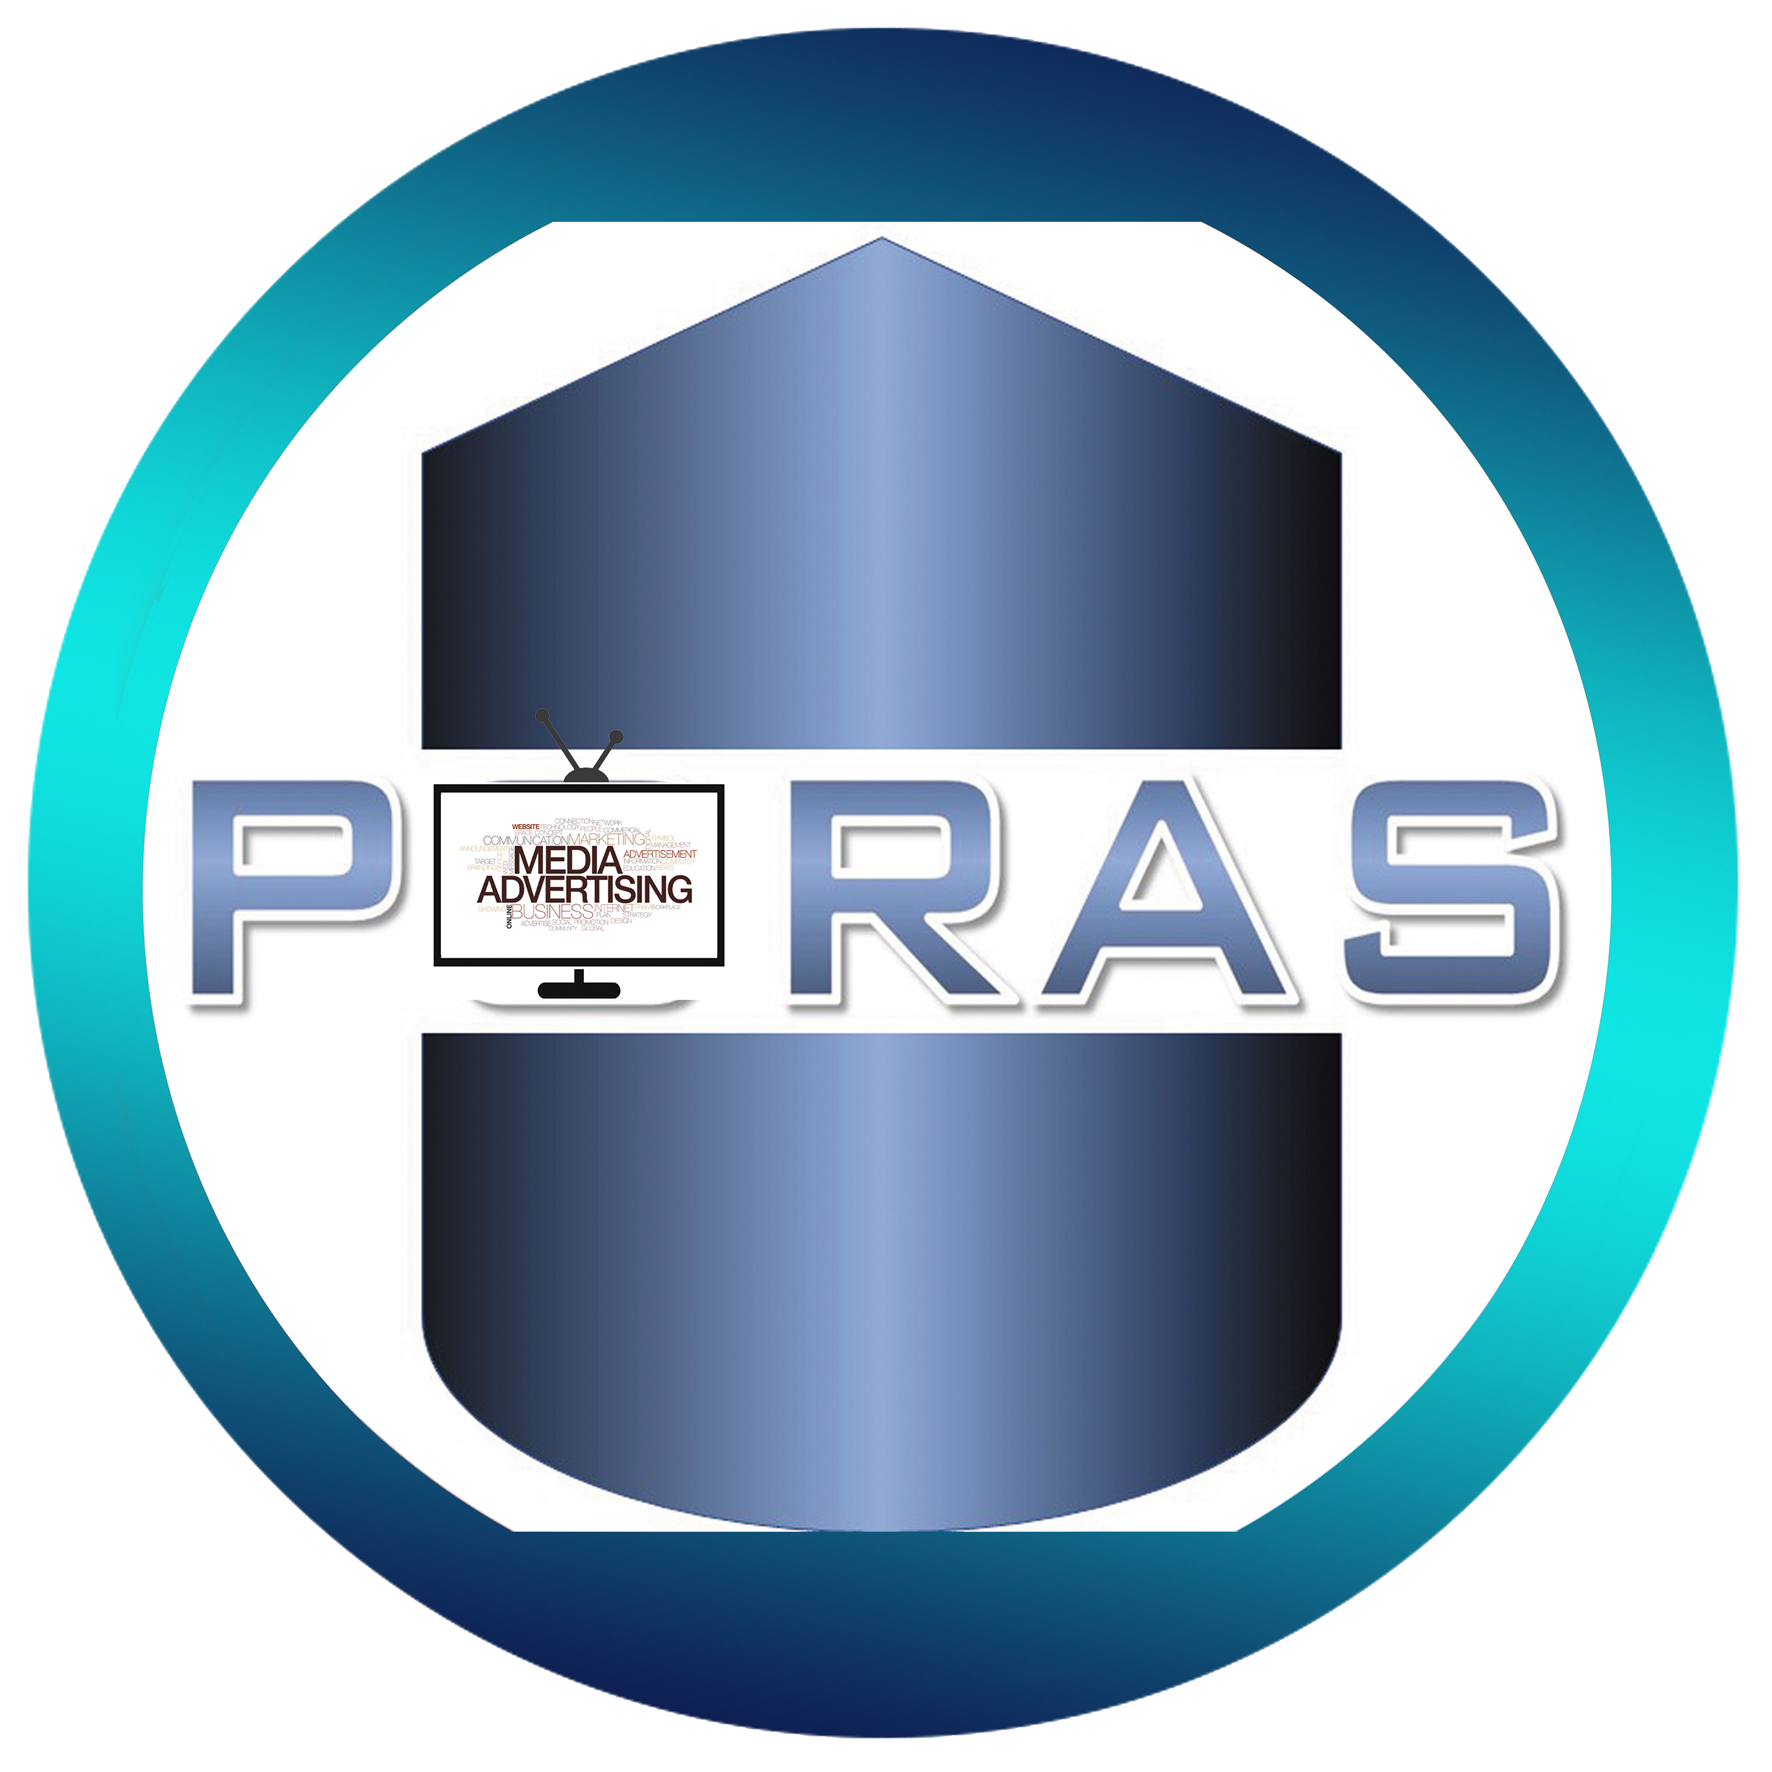 Poras Media And Marketing logo